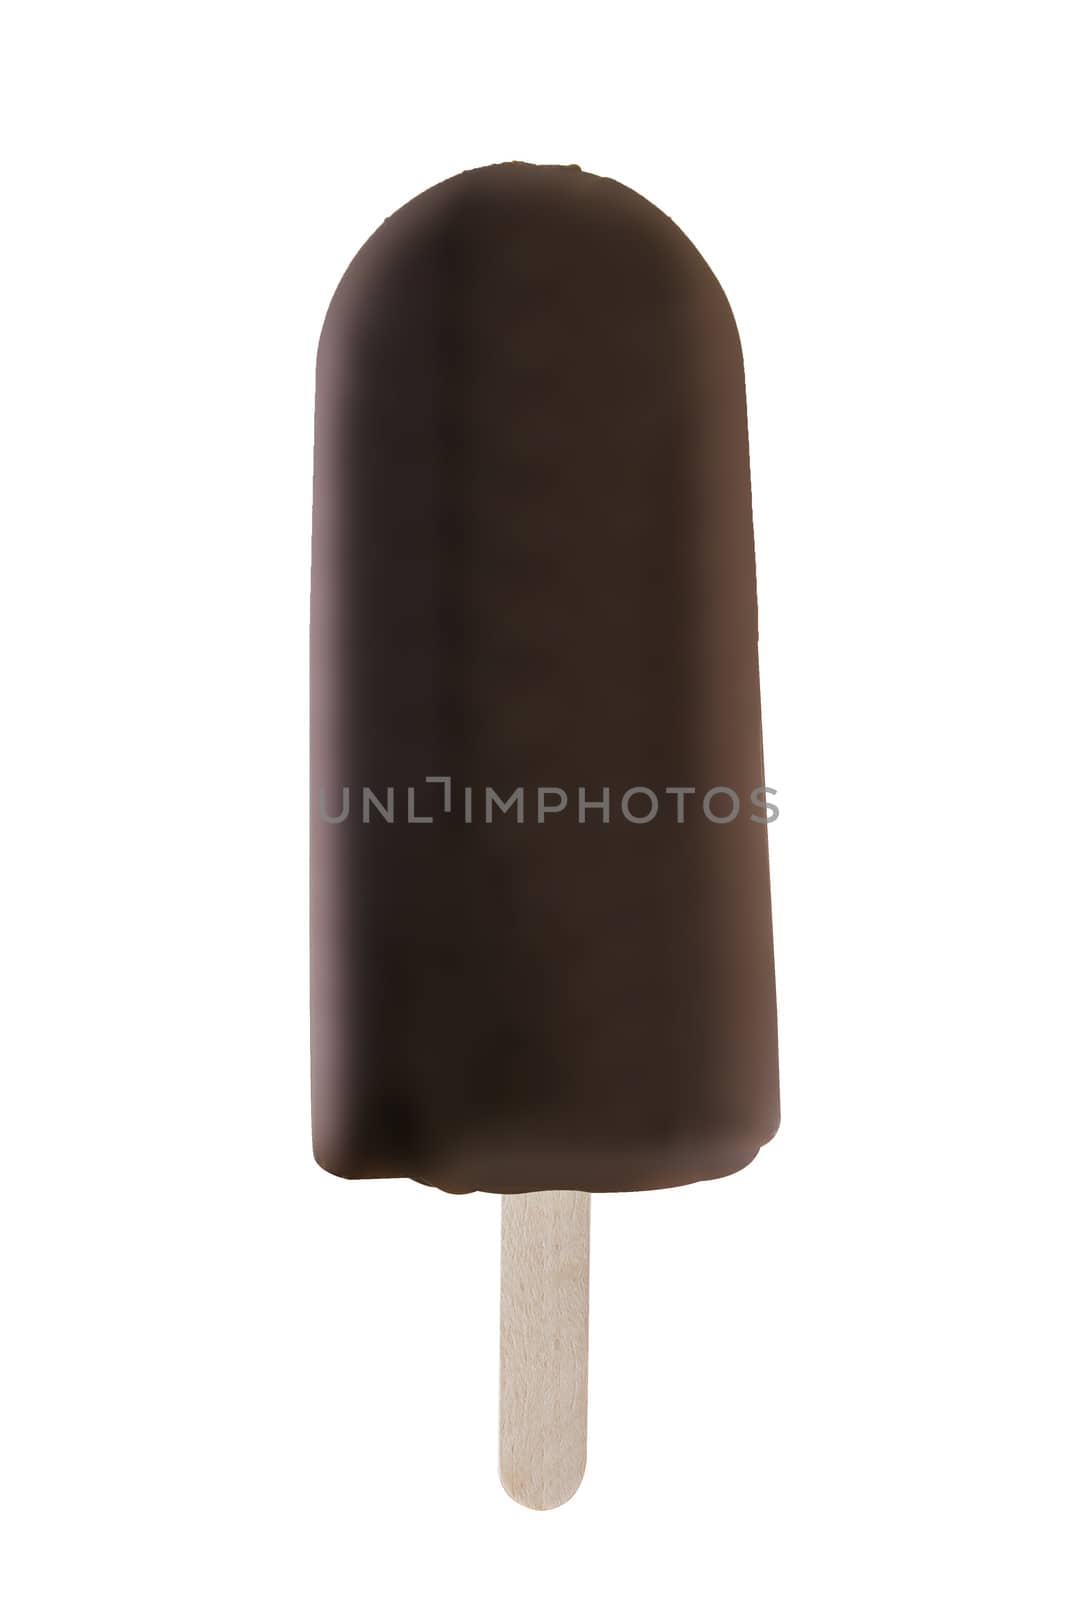 ice cream by designsstock